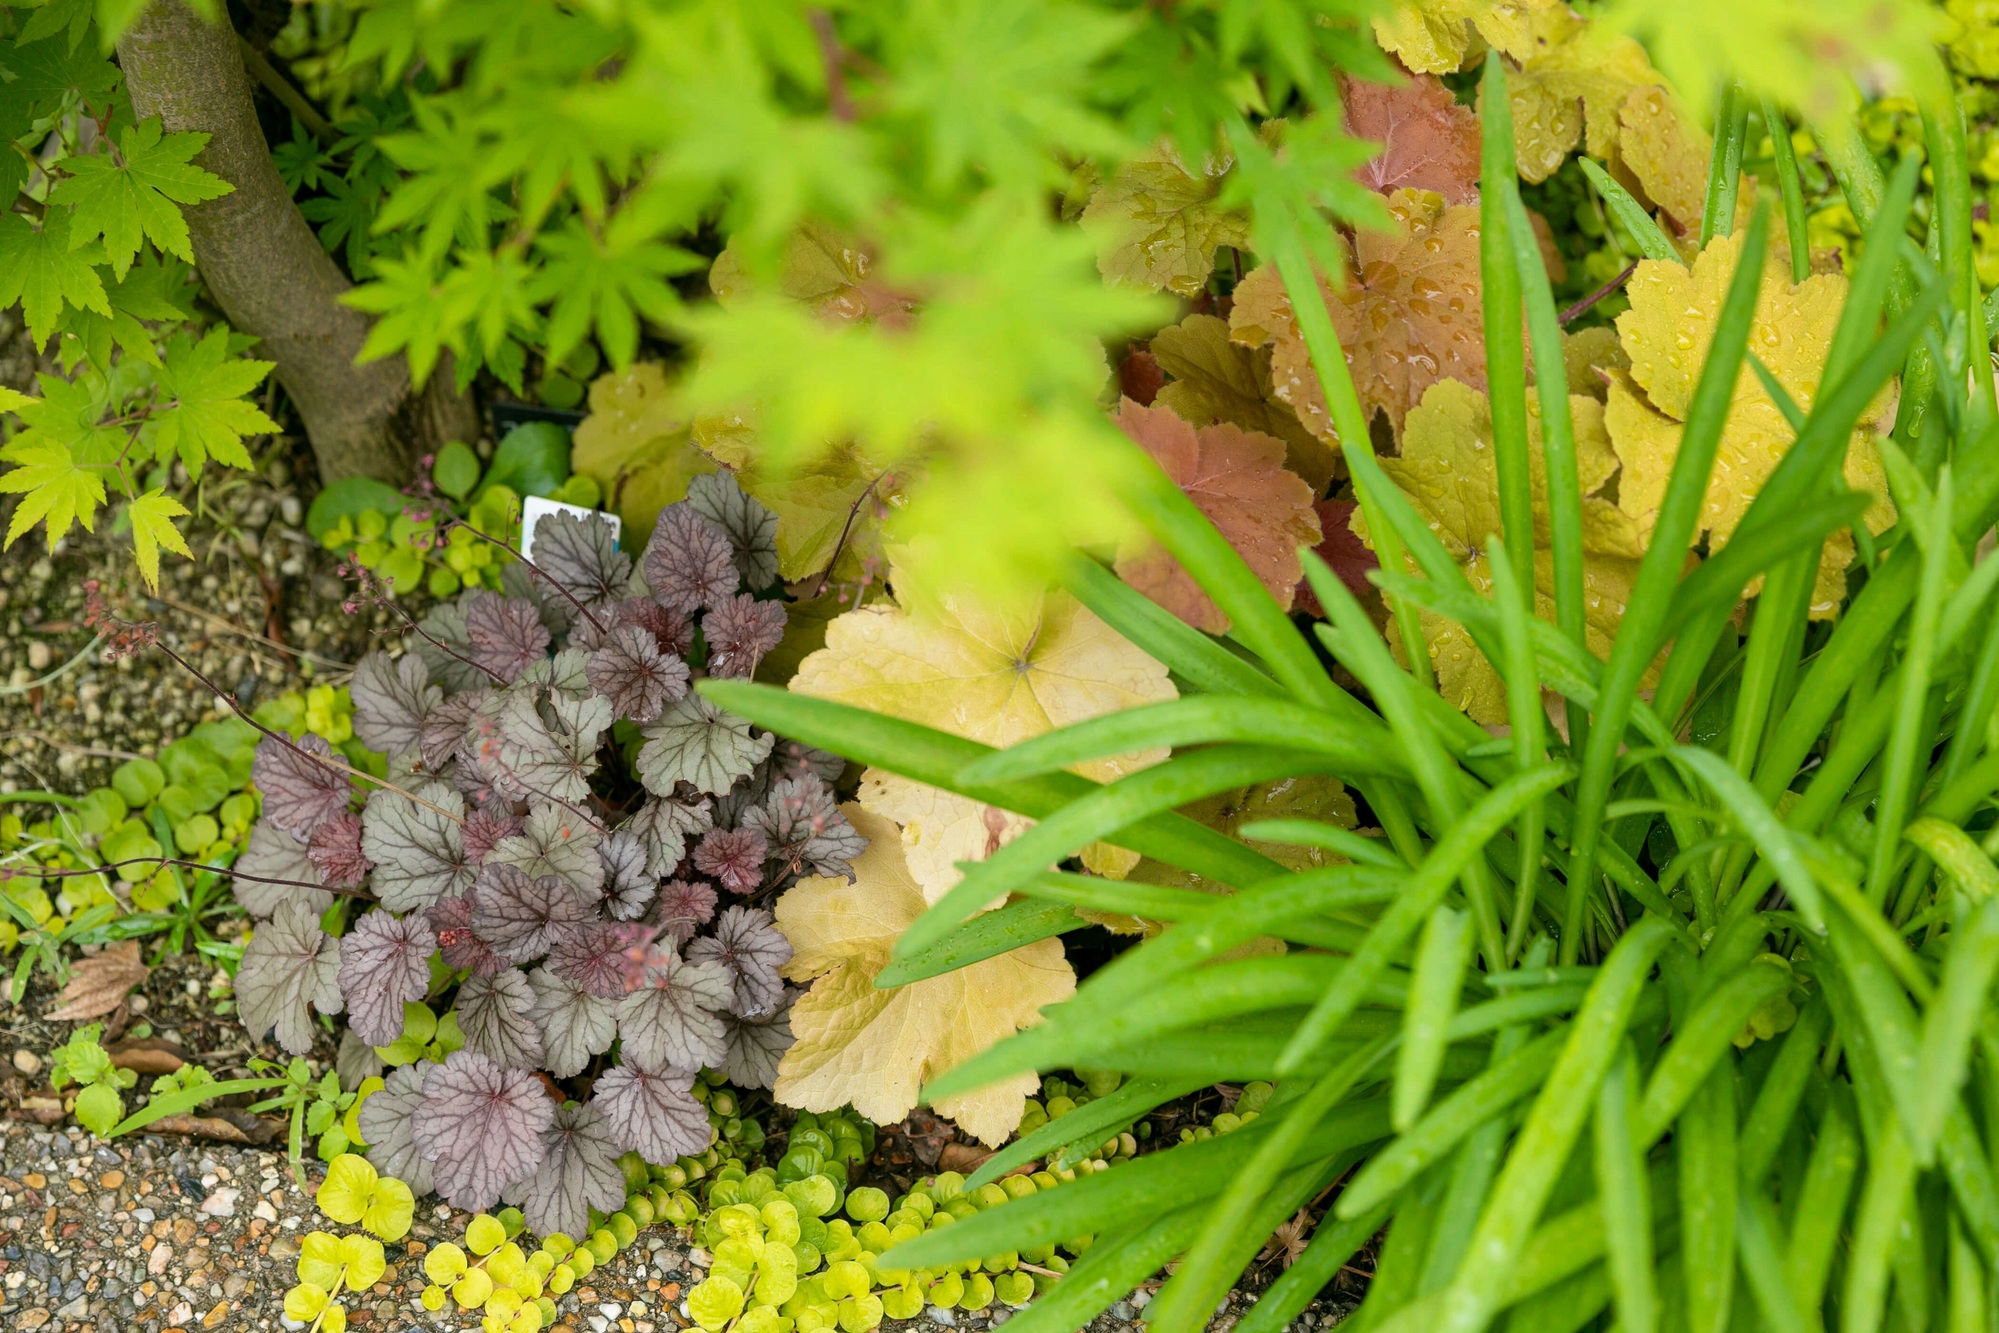 庭 ガーデン ナチュラルガーデン 自然石 ストーンテラス 植栽